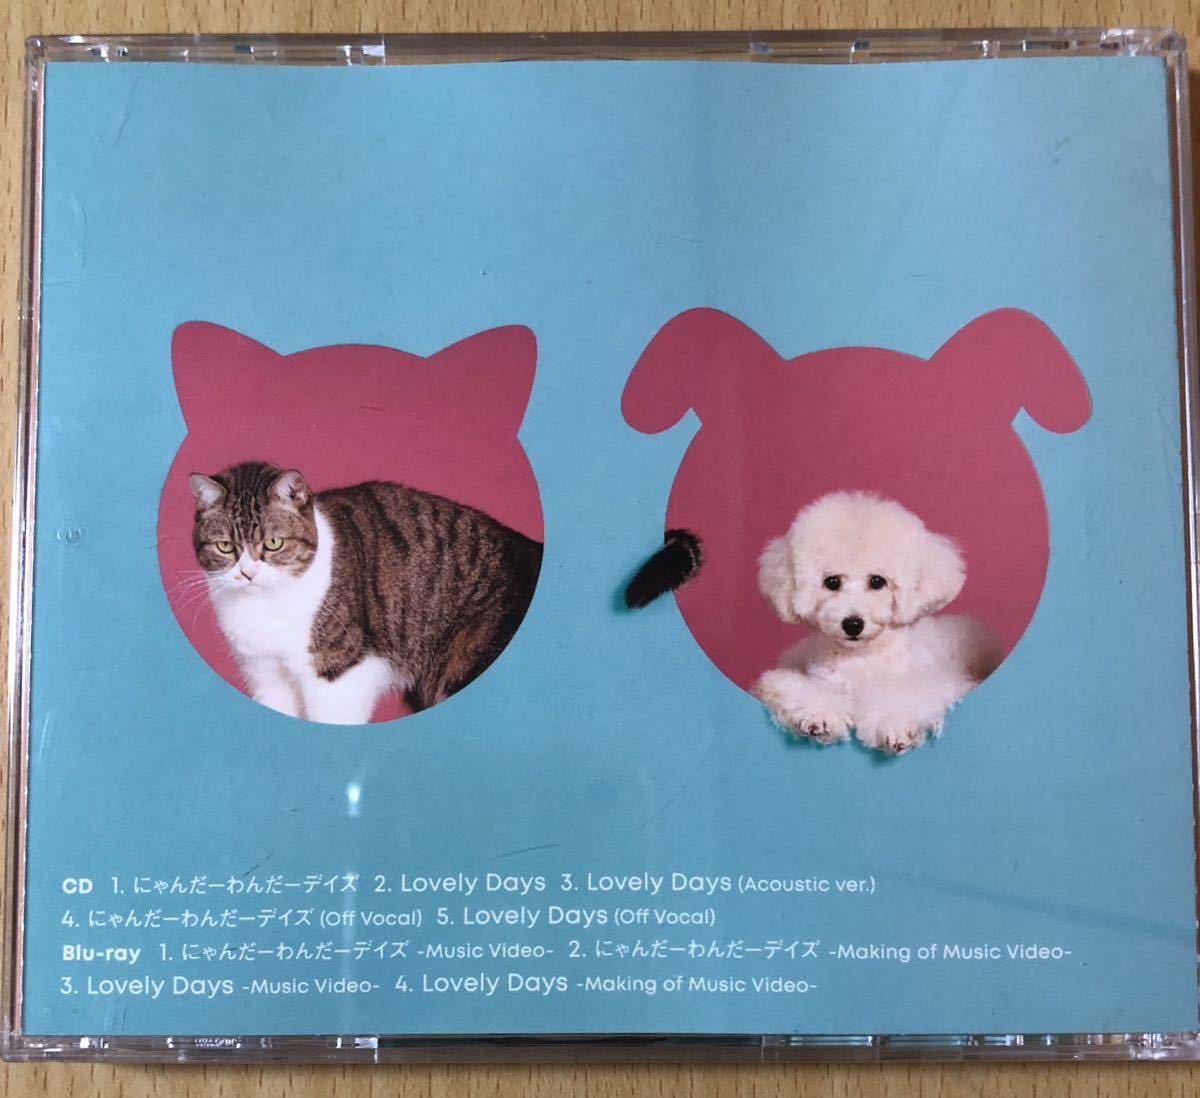 大橋彩香 犬と猫と彩香 彩香盤 Blu-ray付 TVアニメ「犬と猫どっちも飼ってると毎日たのしい」主題歌_画像2